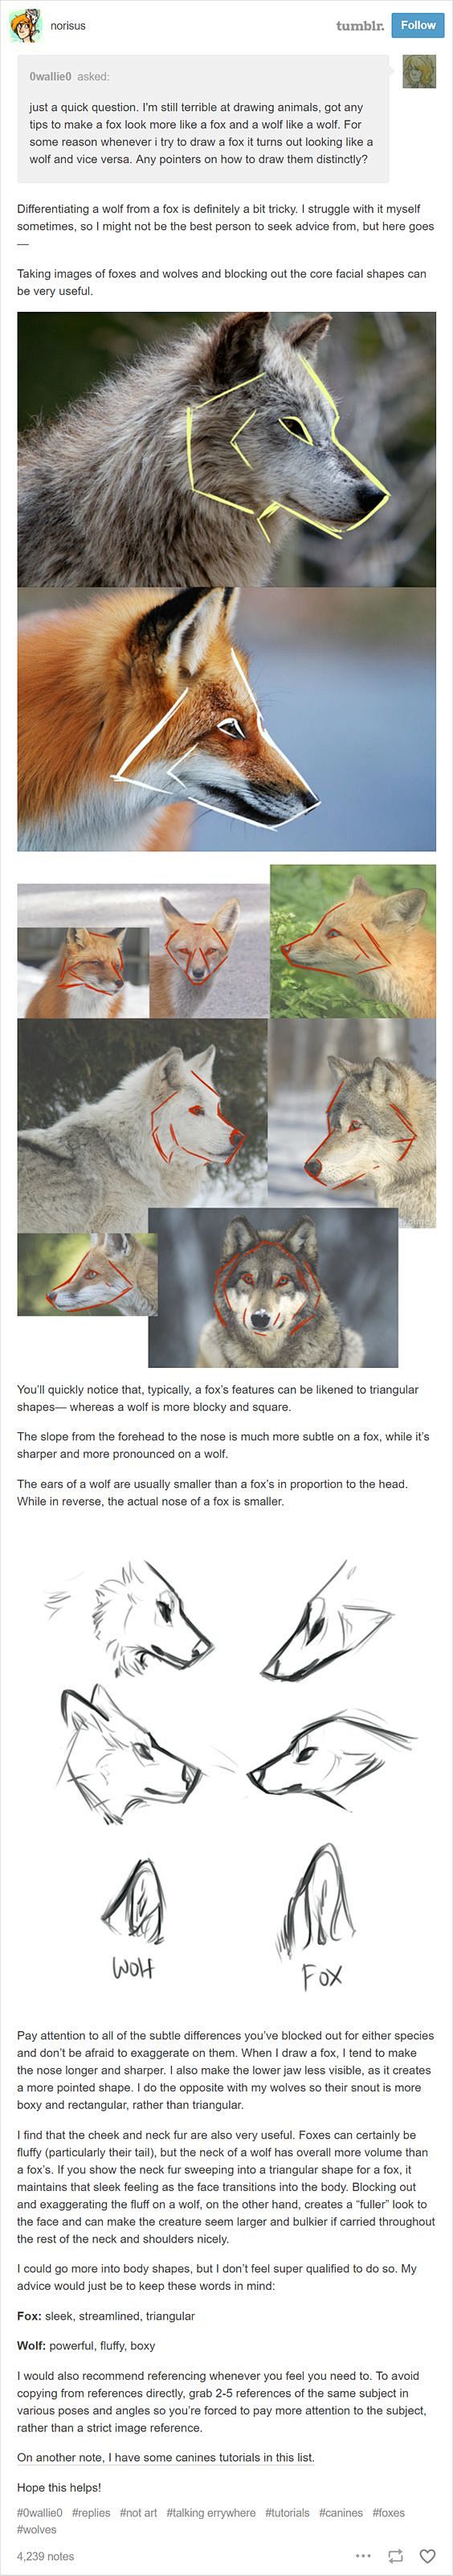 画画时区分狼和狐狸